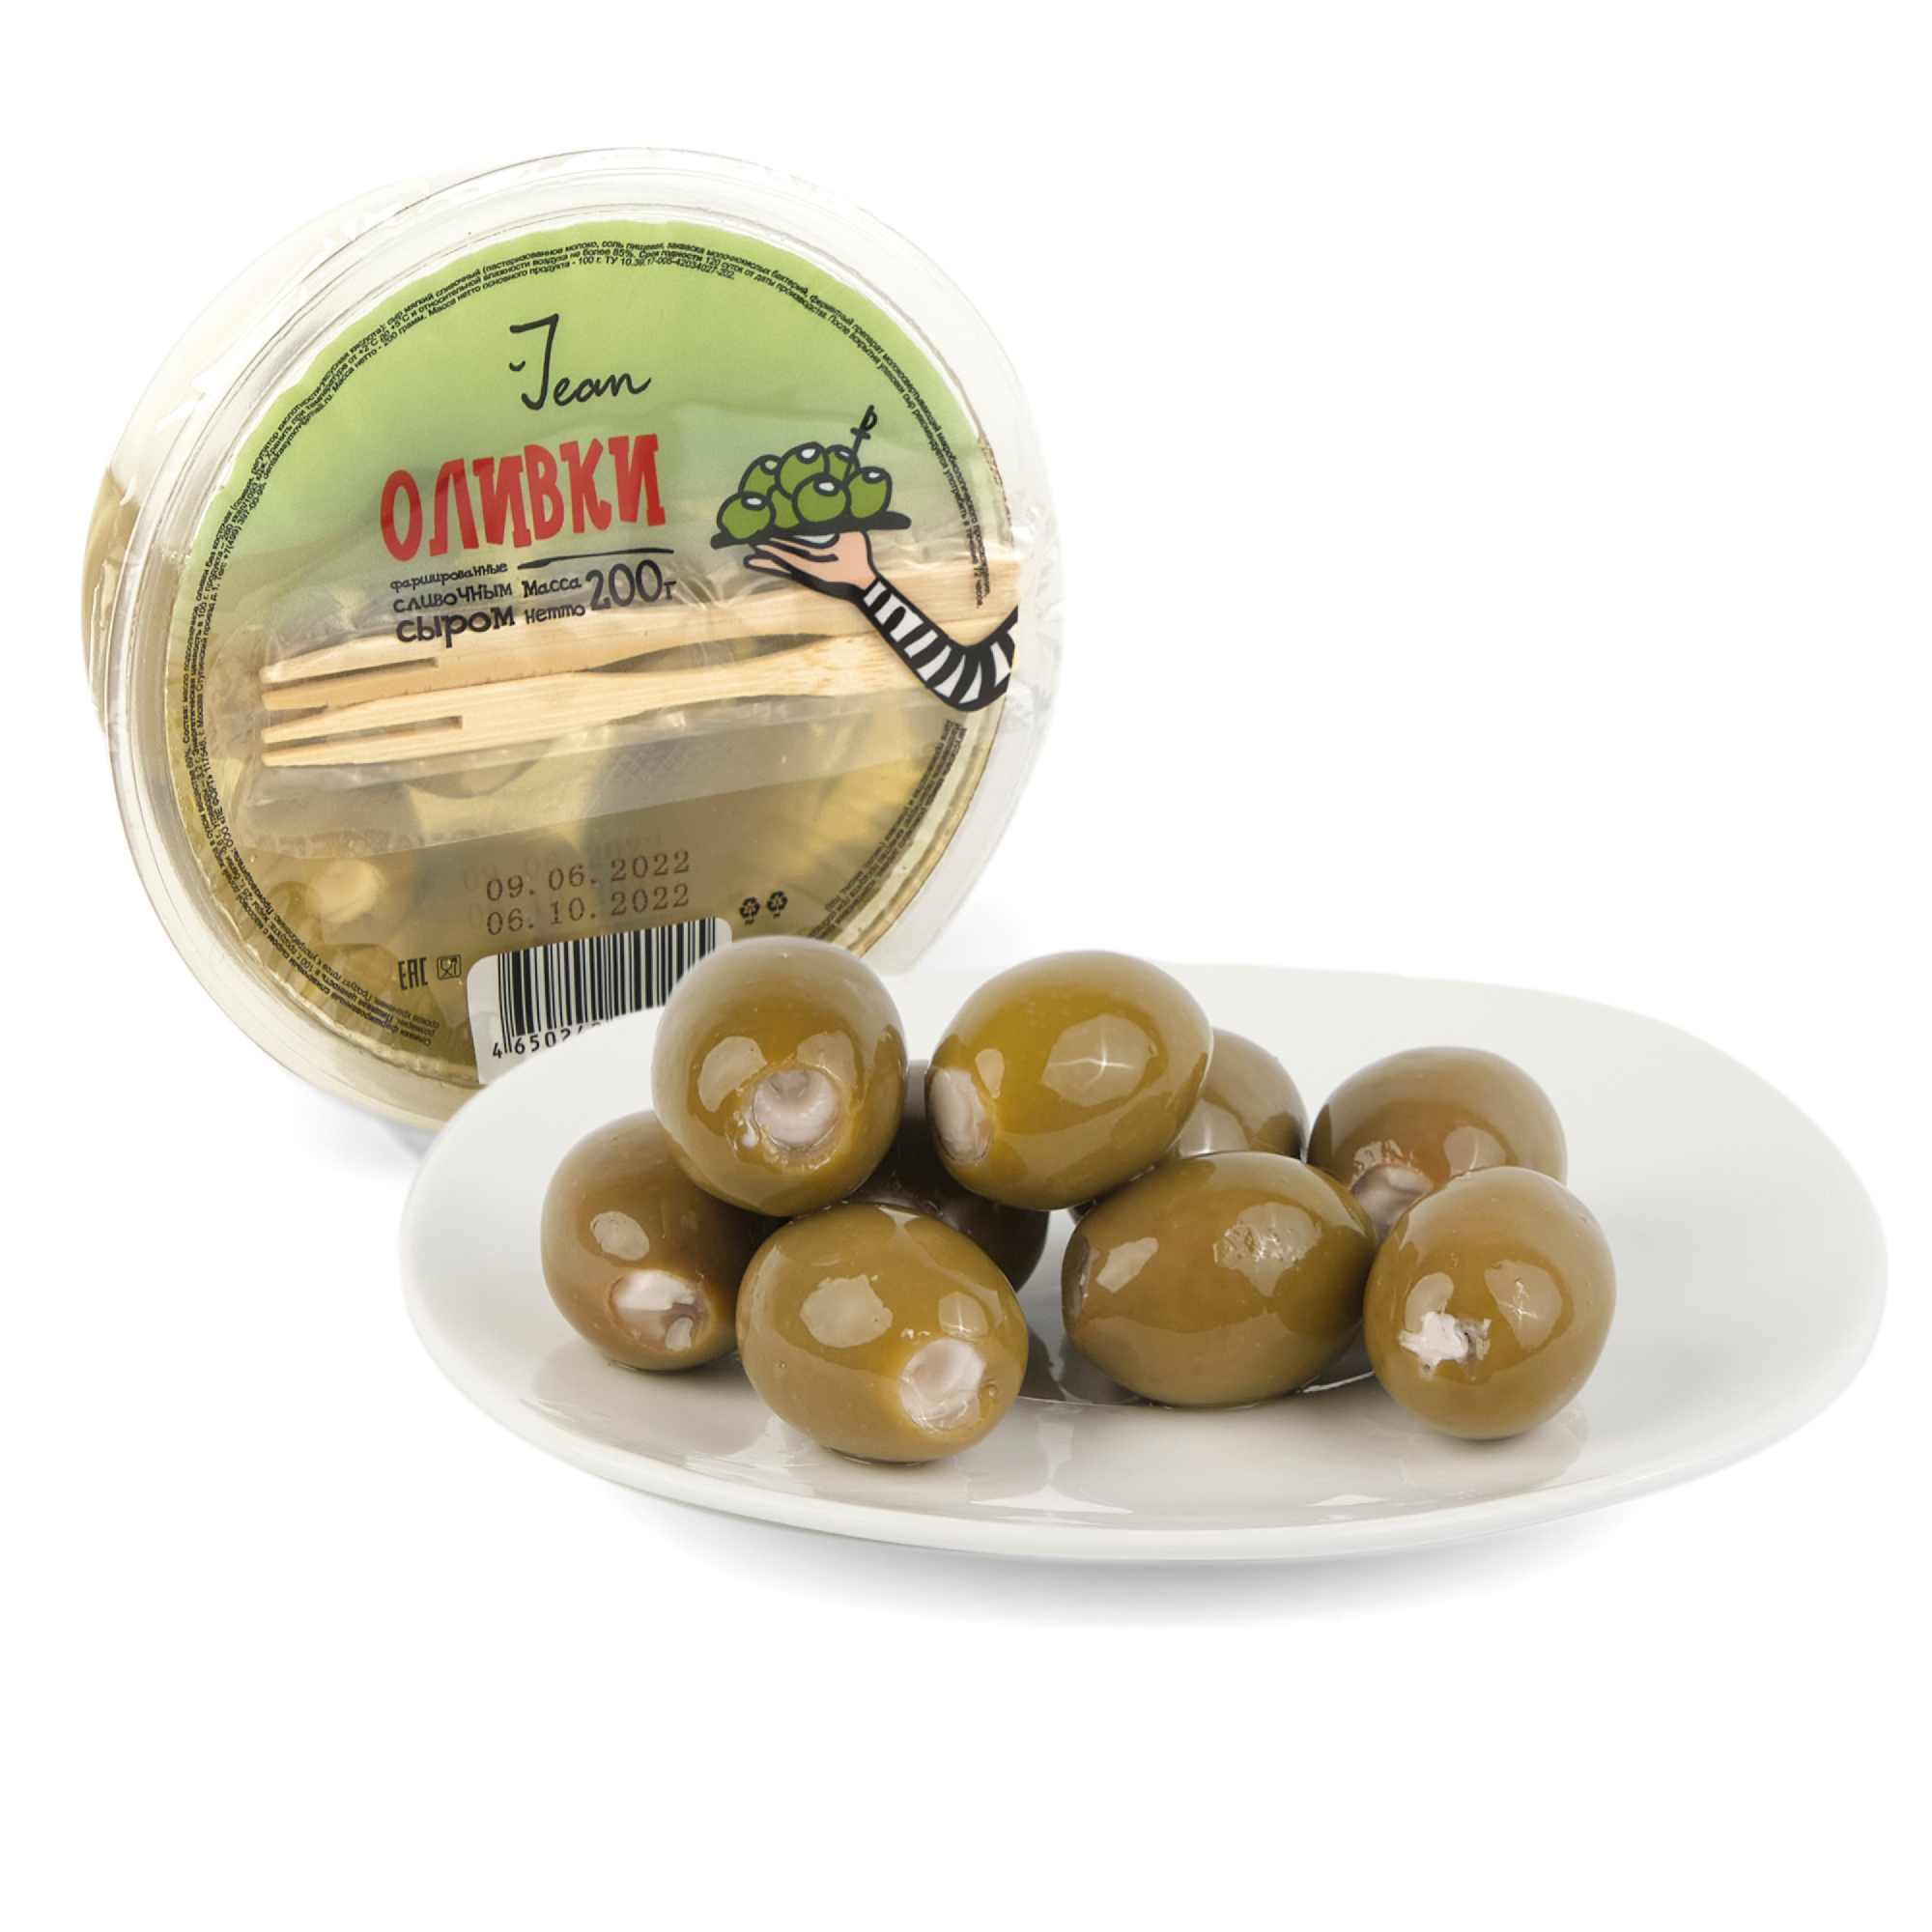 Фаршированные оливки Jean сливочным сыром, 200 г фаршированные оливки jean сливочным сыром 200 г